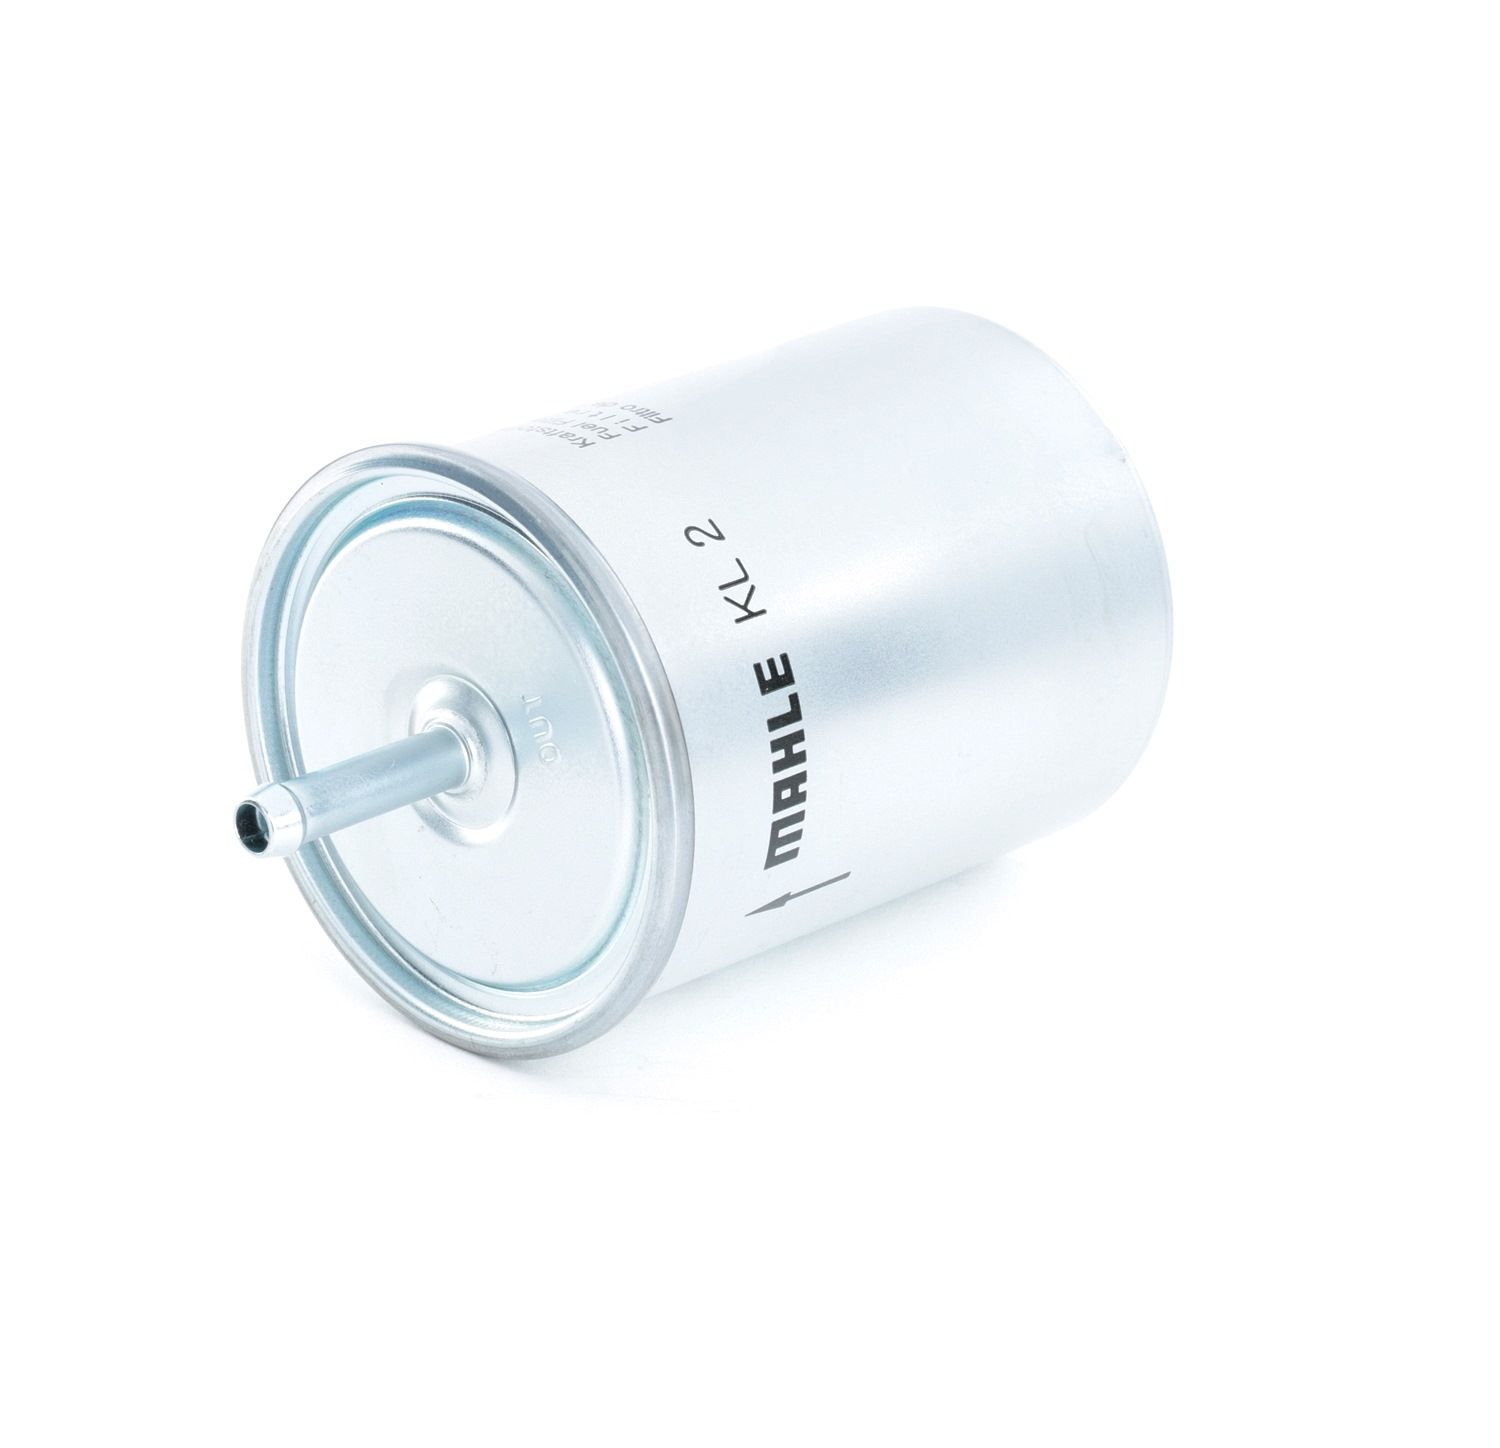 MAHLE ORIGINAL KL 2 Palivový filtr Filtr zabudovaný do potrubí, 8mm, 8,0mm Daewoo v originální kvalitě